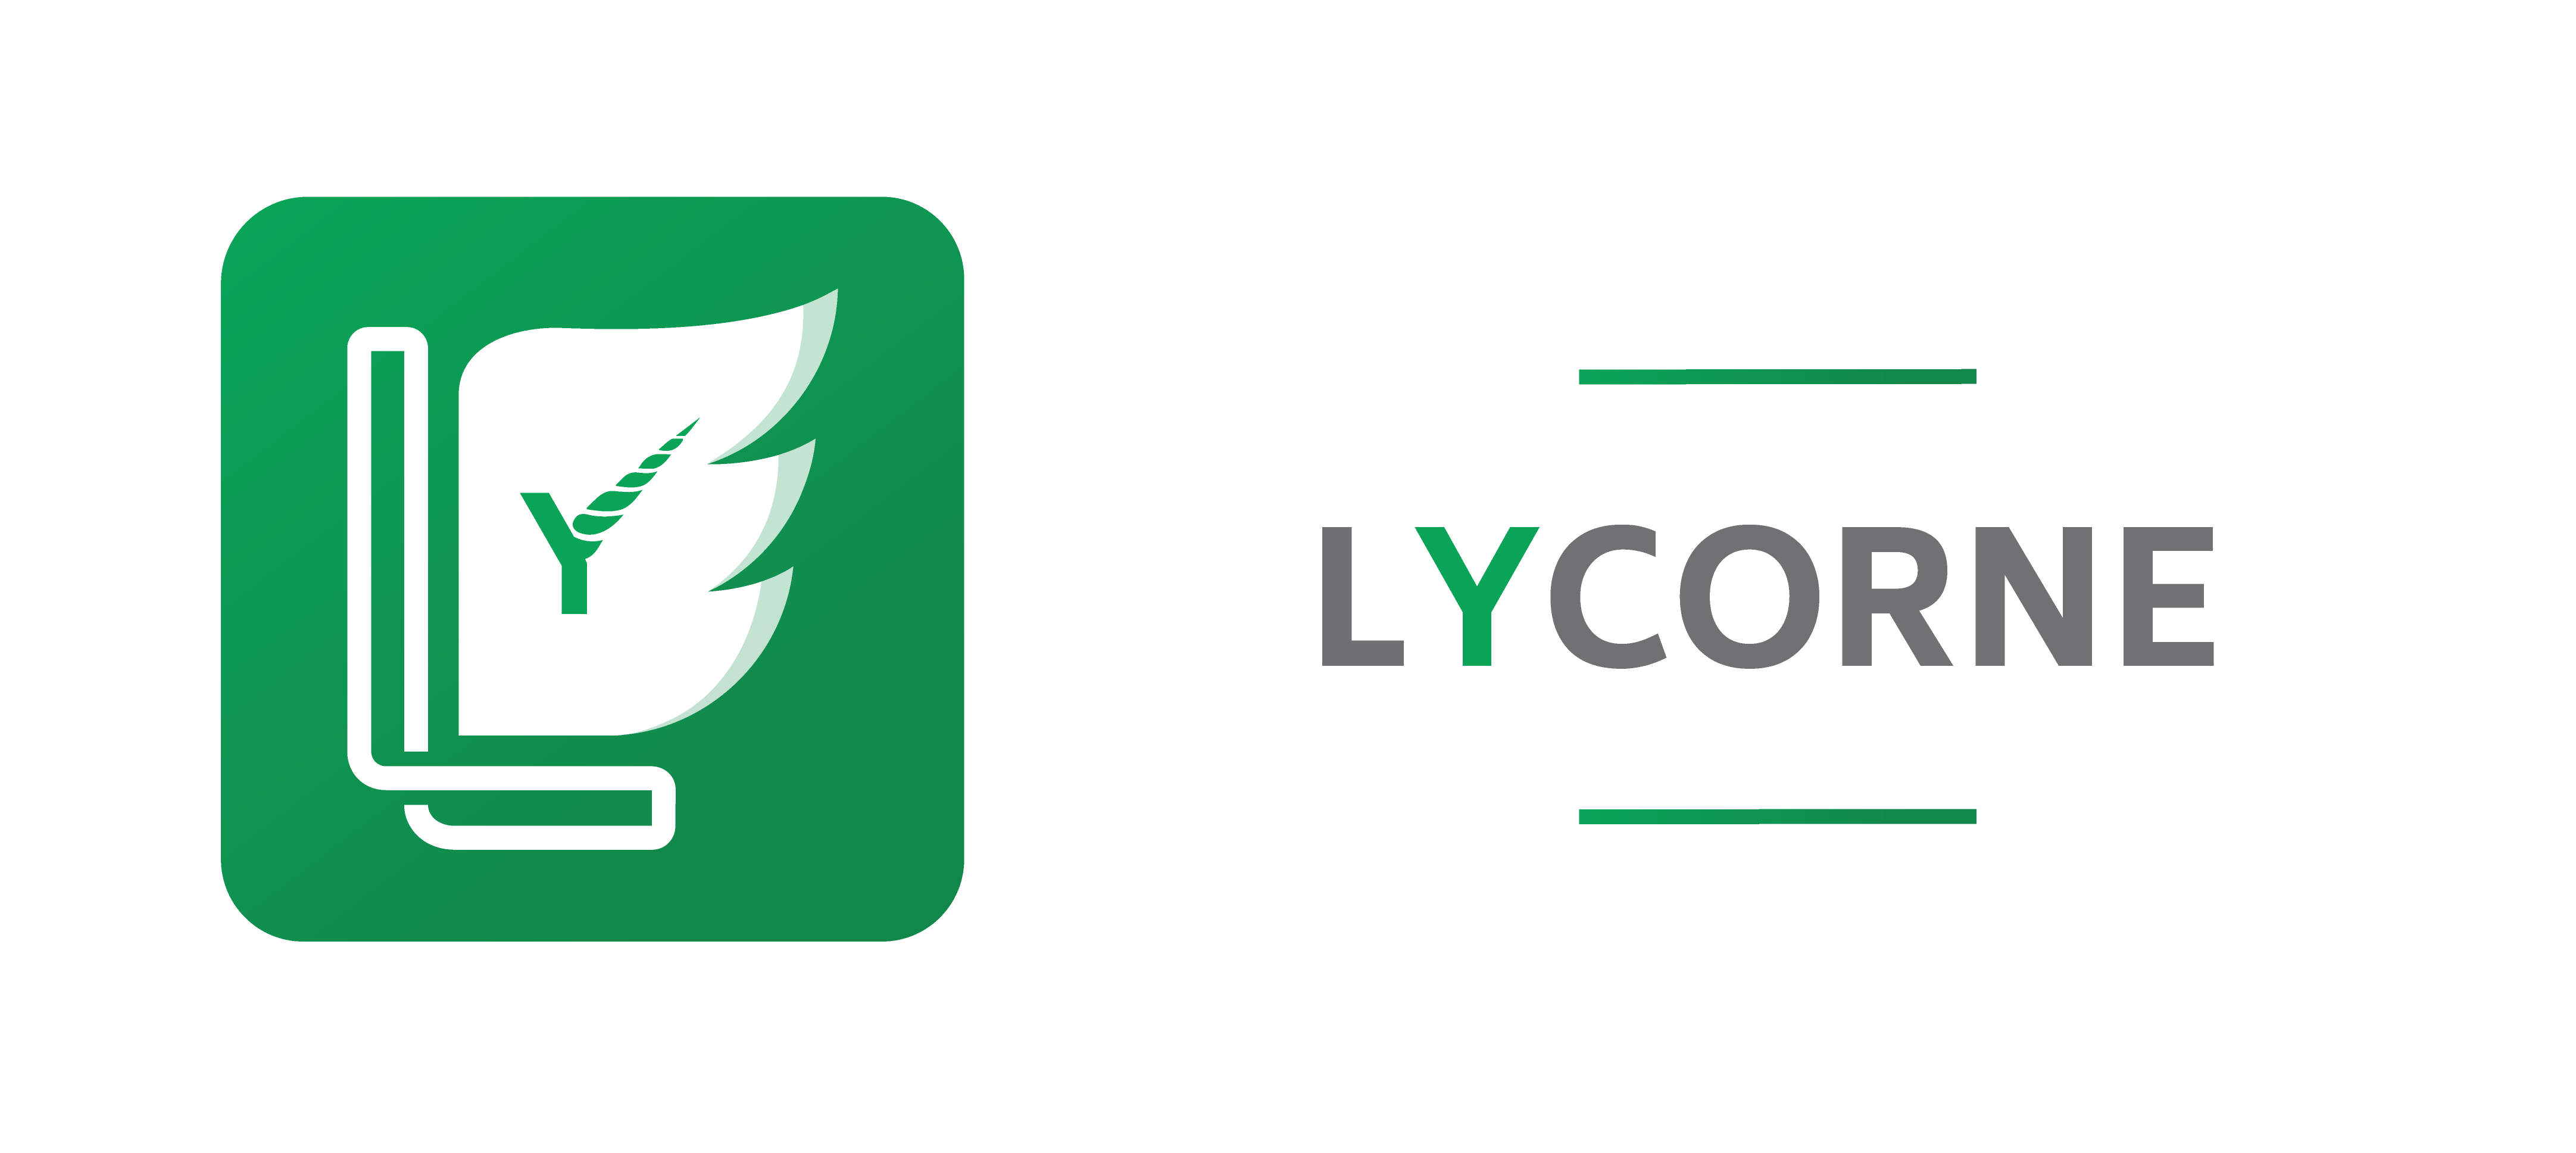 Lycorne, logiciel devis facture rentabilité